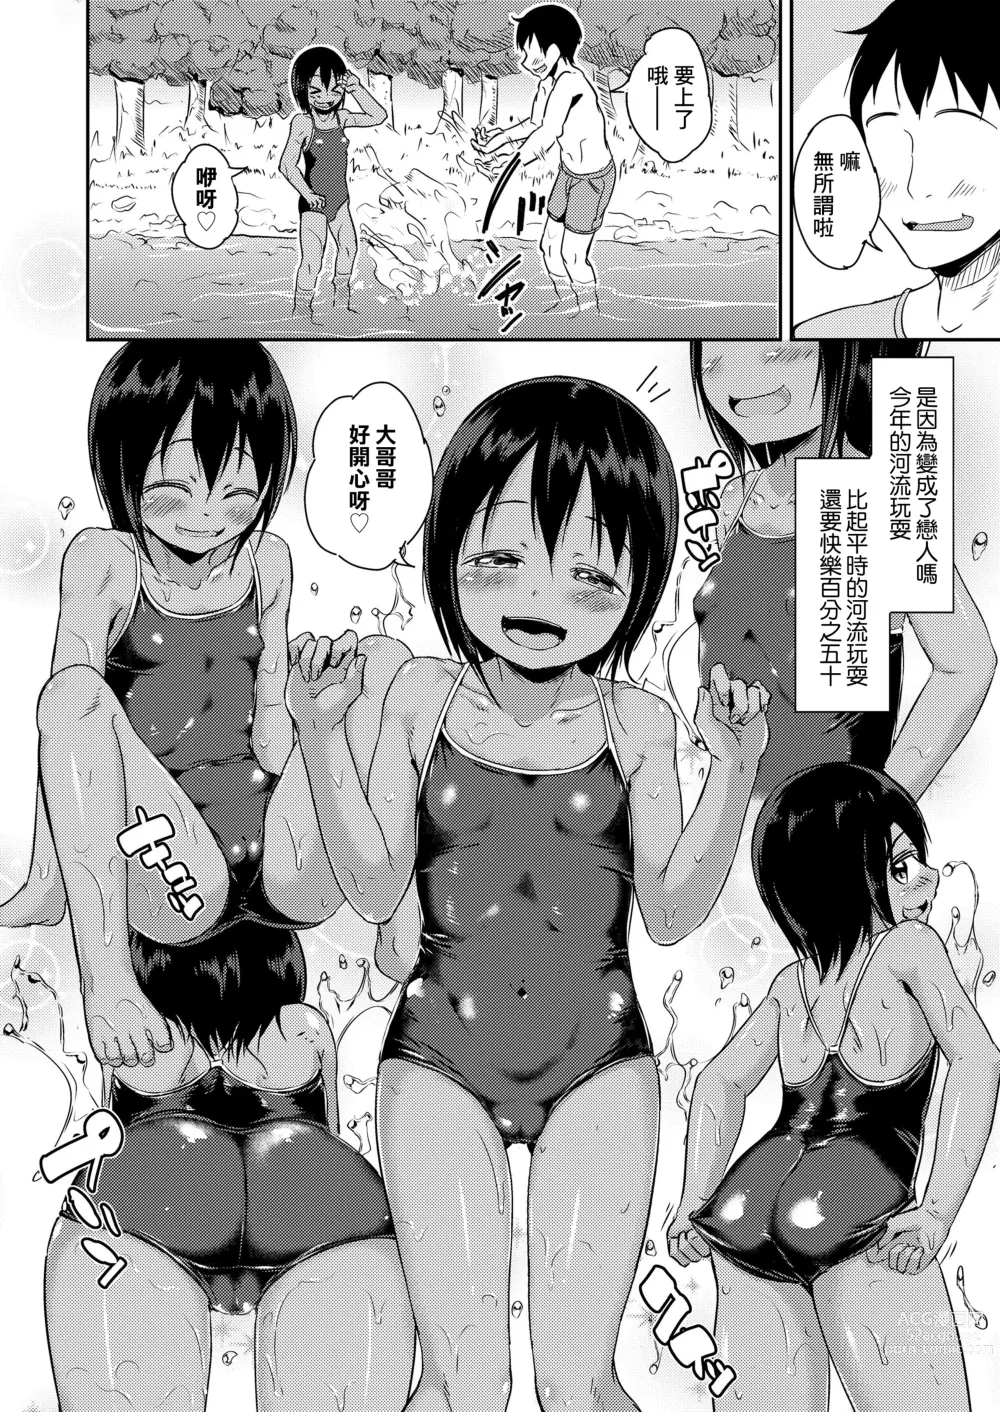 Page 4 of manga Kawabe de Mei Trap